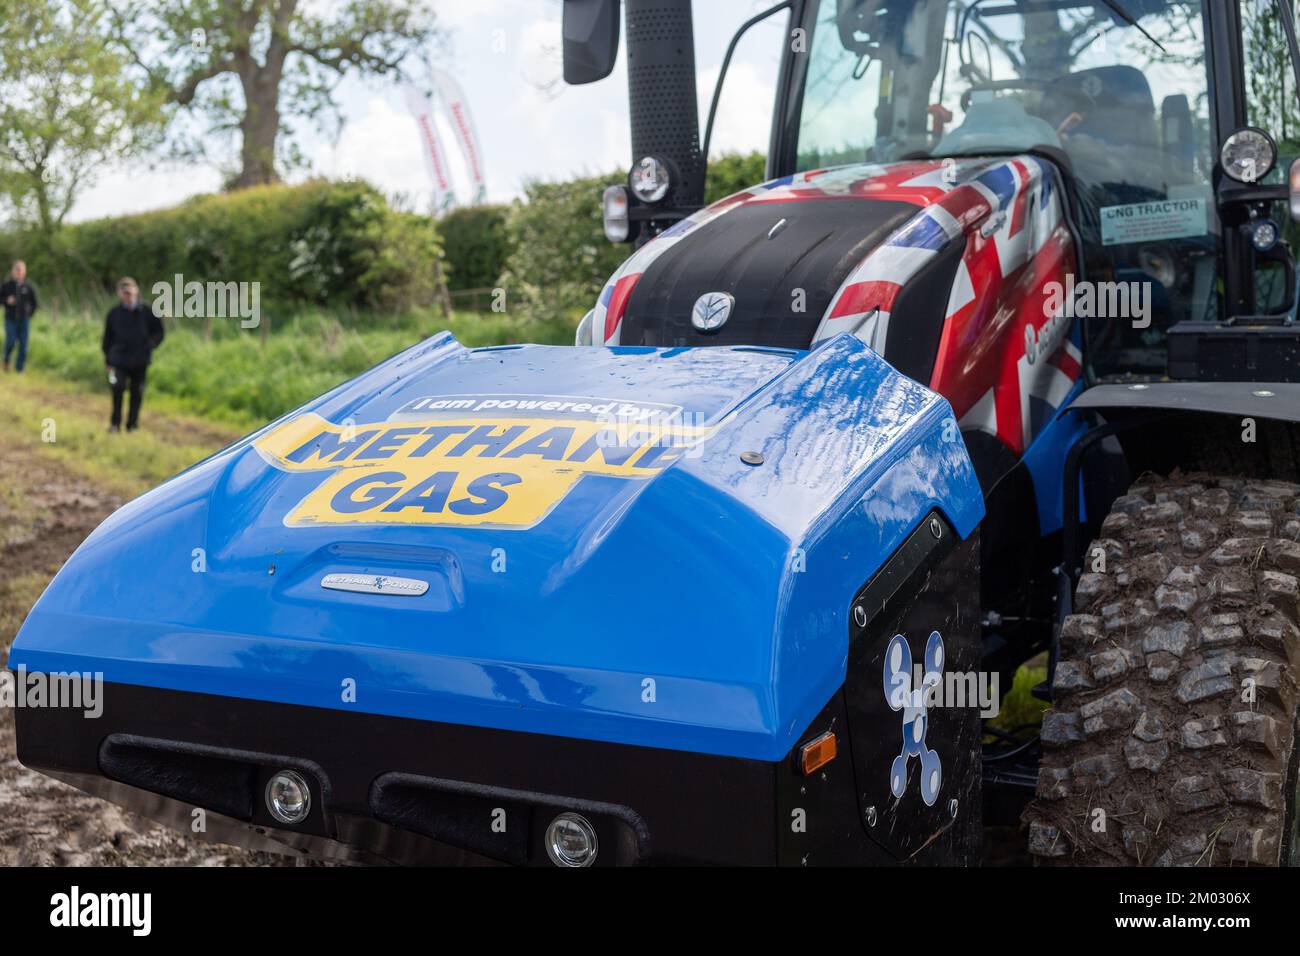 Wasserstoffbetriebener New Holland-Traktor auf einer landwirtschaftlichen Ausstellung in Dumfries, Großbritannien. Stockfoto